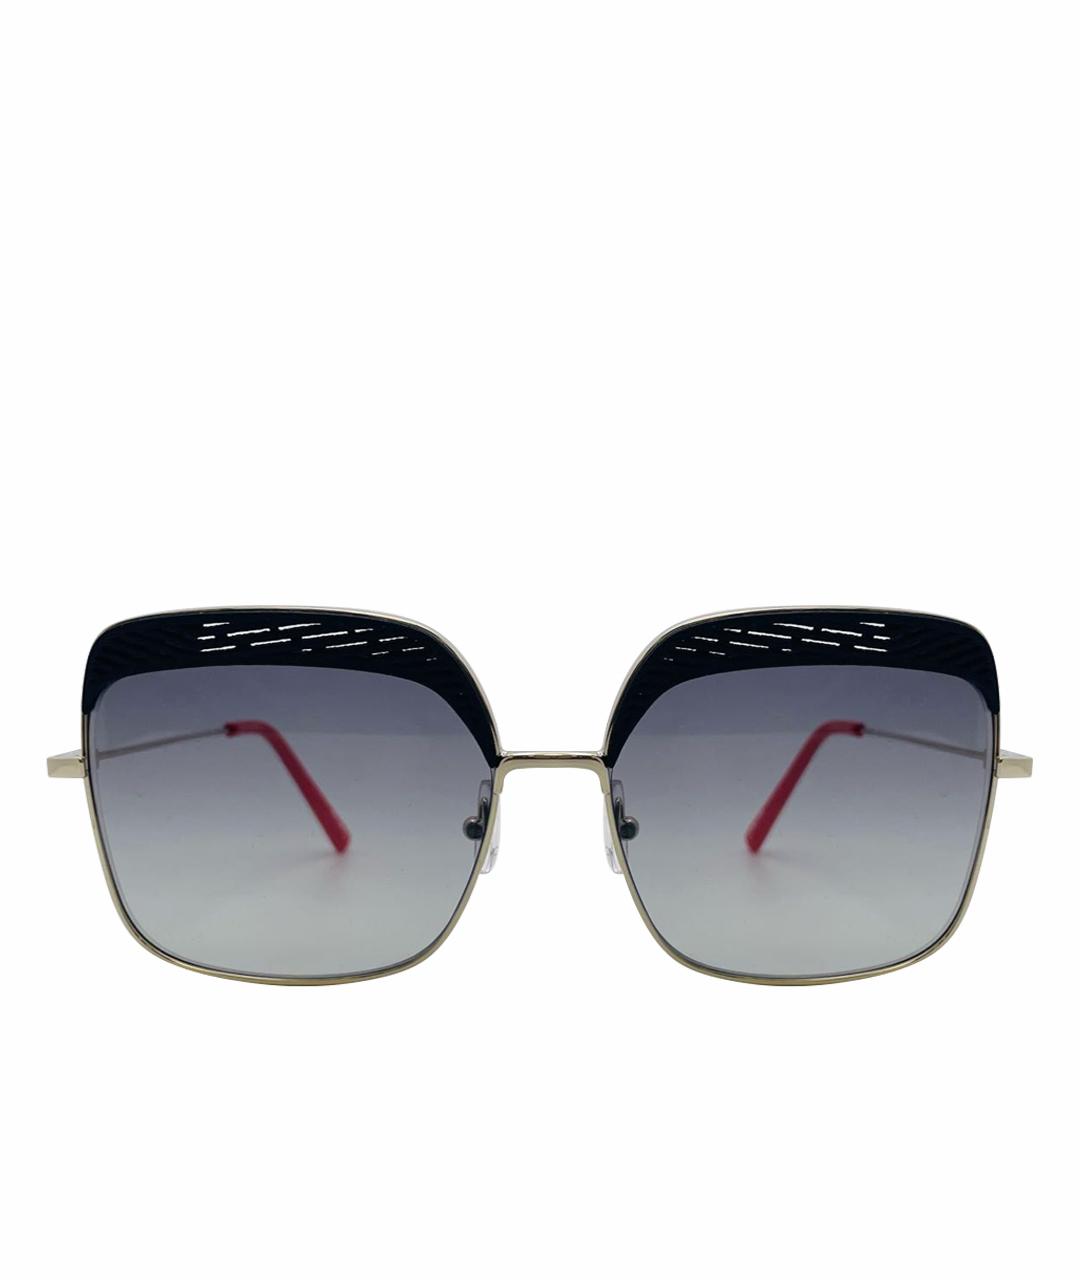 OXYDO Мульти металлические солнцезащитные очки, фото 1